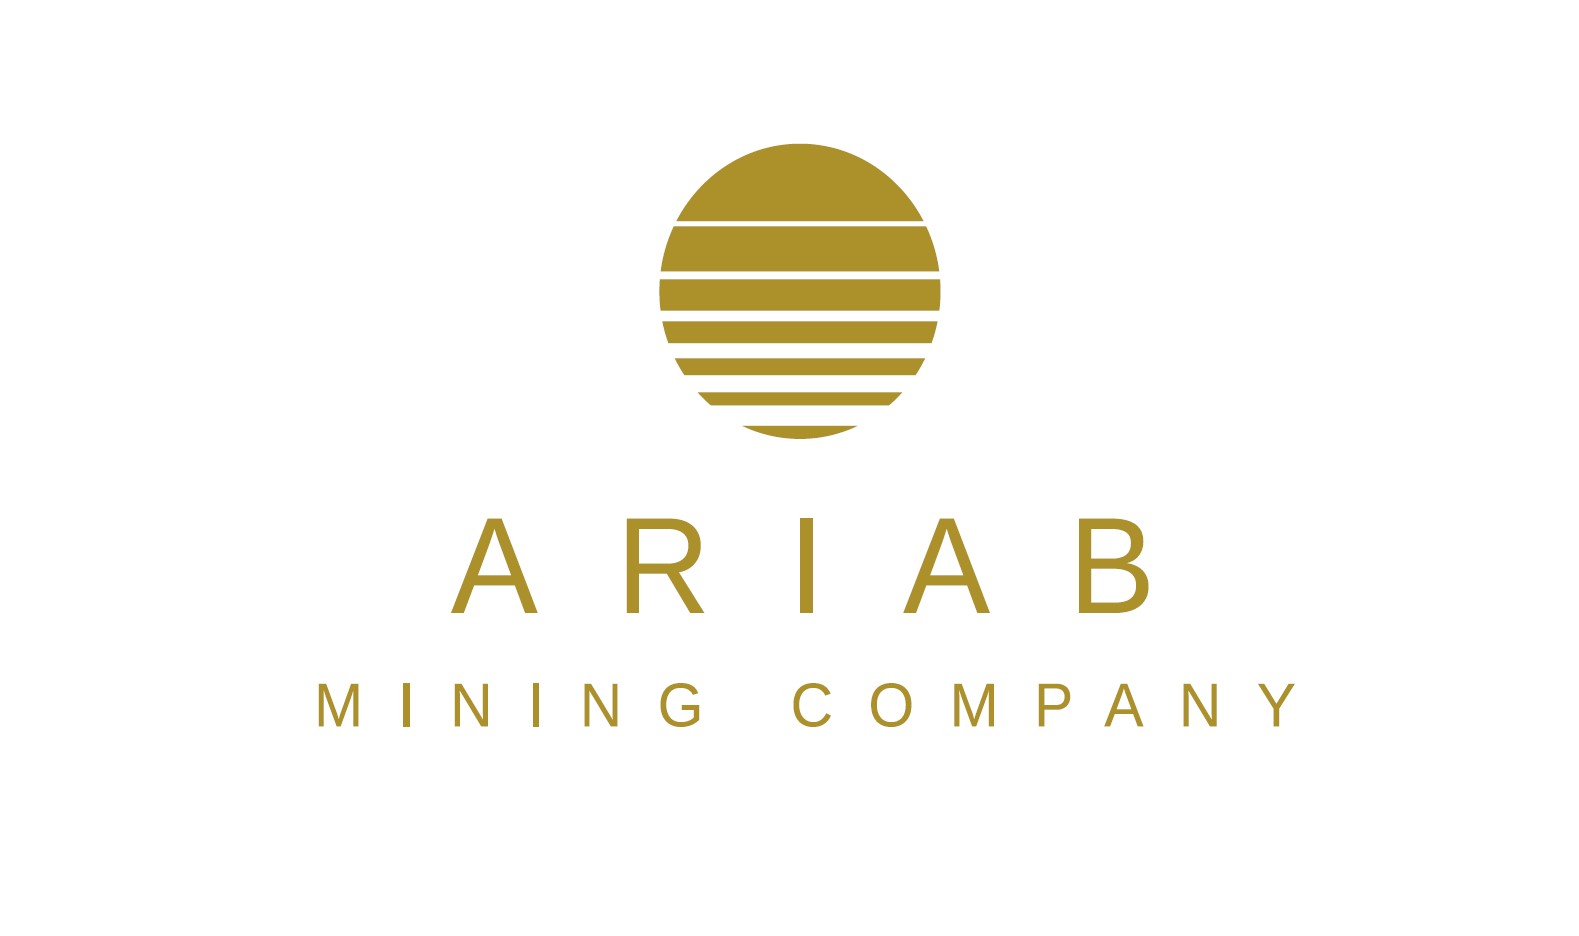 Sudan's Leading Mining Company